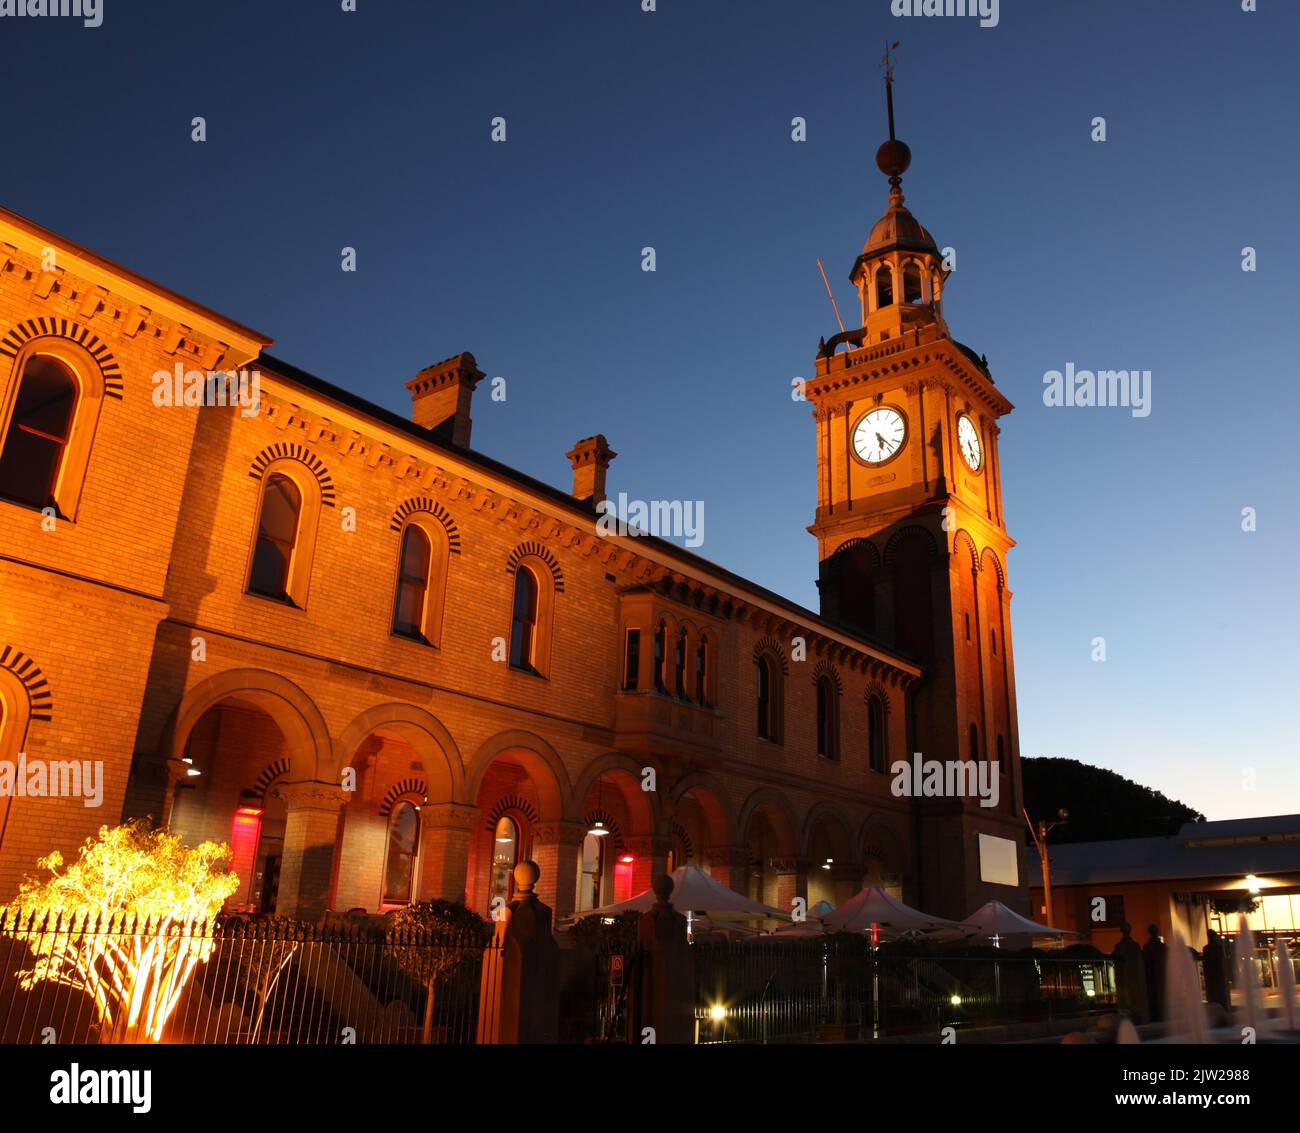 Customs House - Newcastle Australia - Illuminated night image of one of Newcastle's famous landmarks. Stock Photo